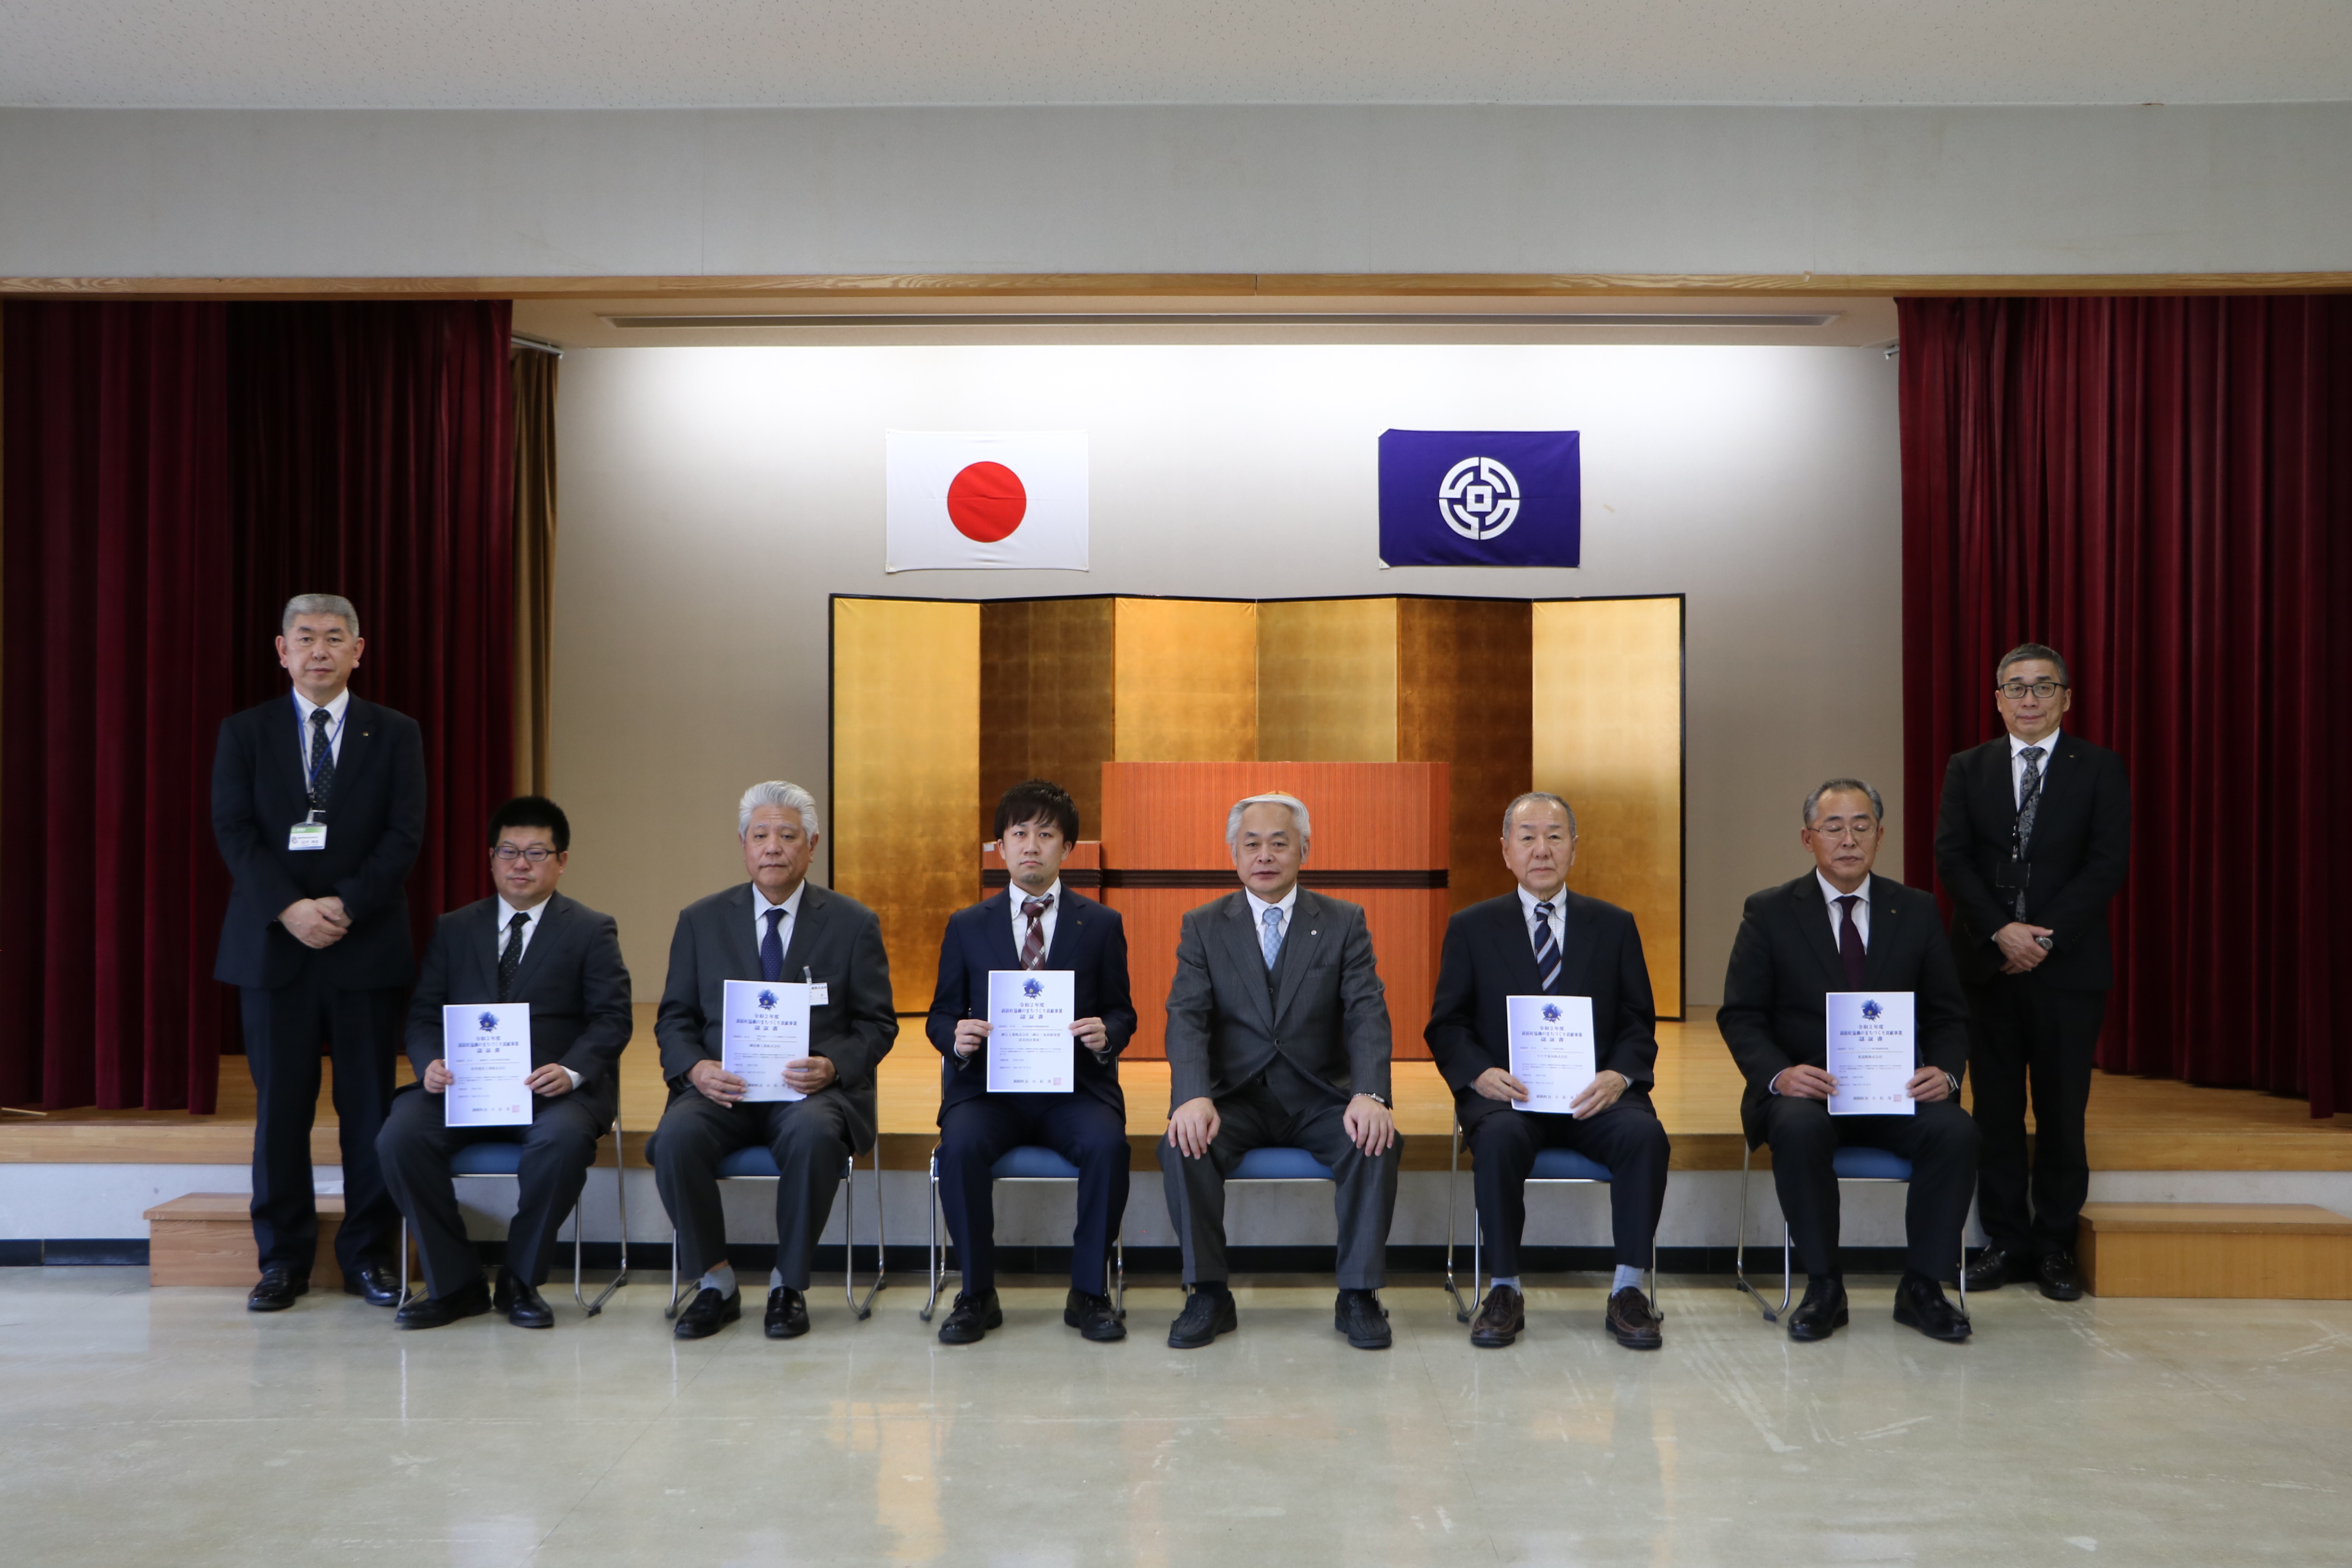 釧路町協働のまちづくり貢献事業認証書交付式で5事業所に認証書を交付